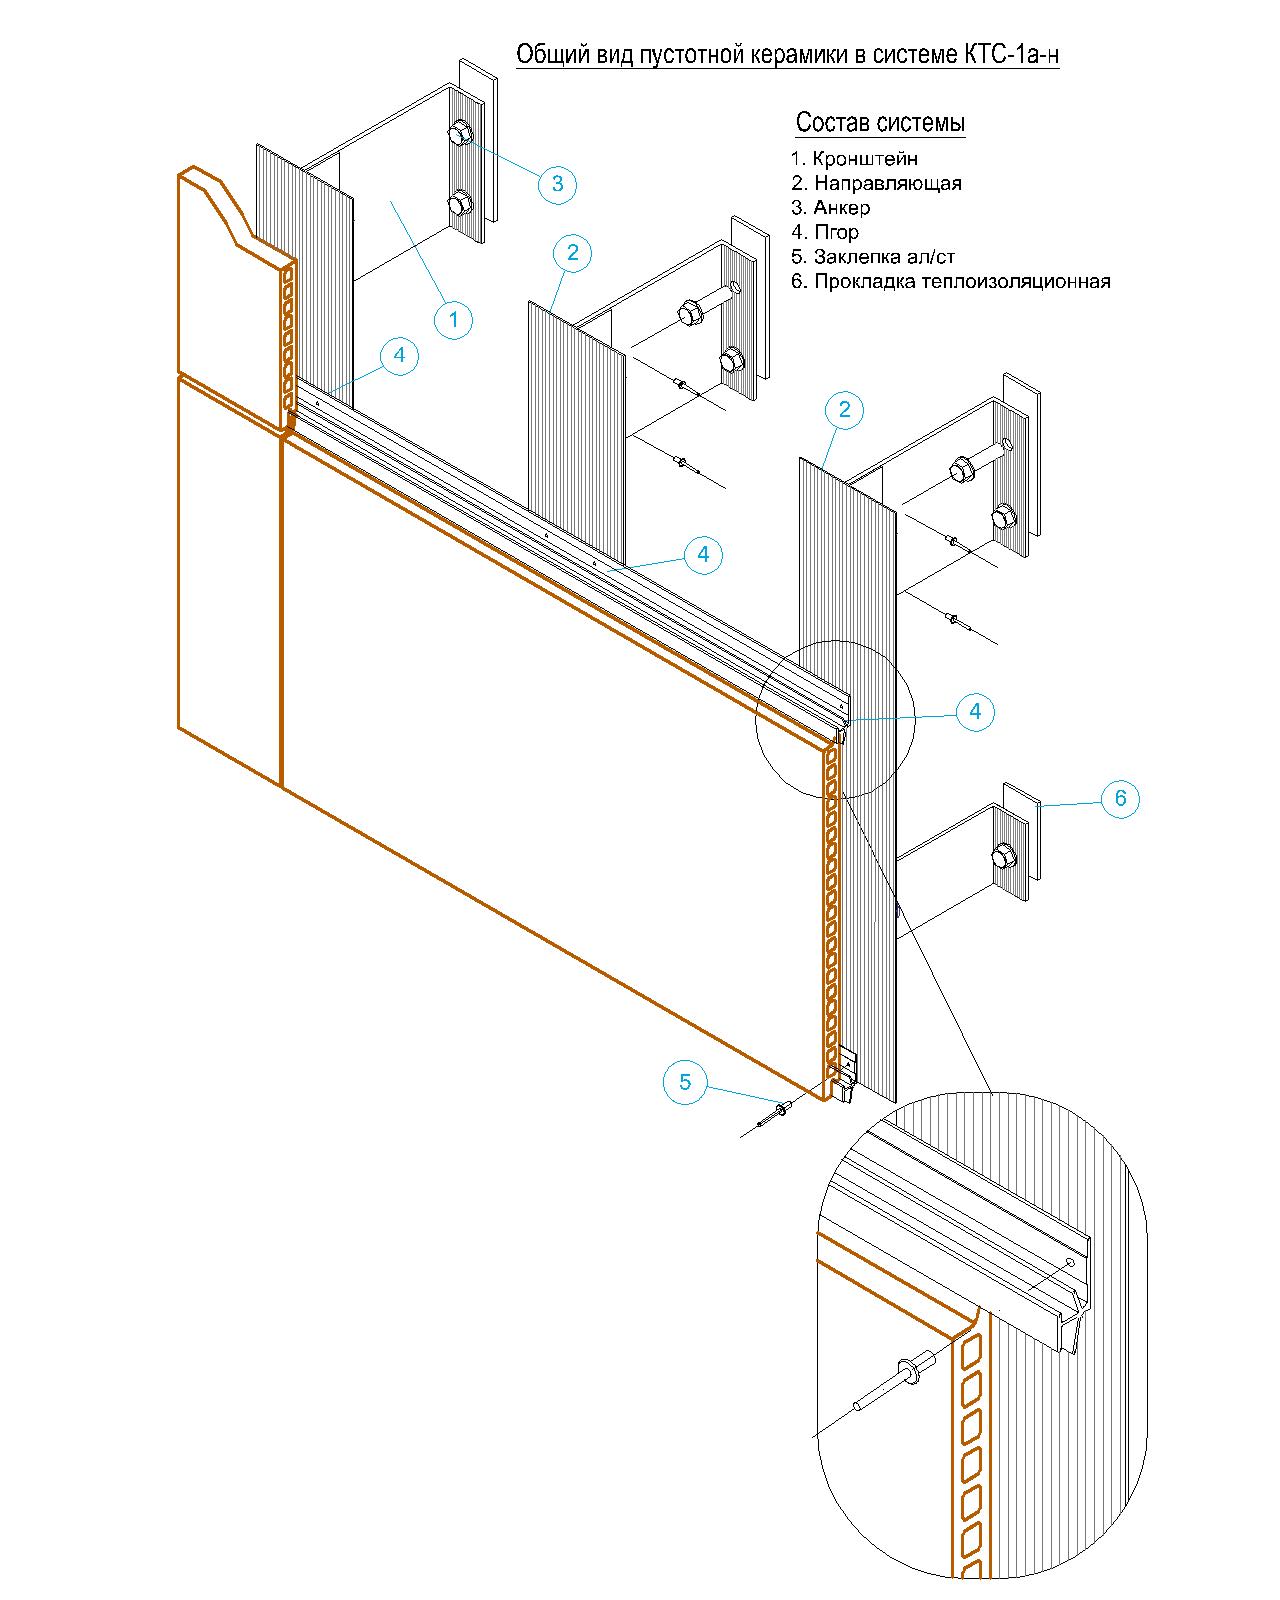 Фасадные системы  и подсистемы - КТС-1АН для пустотной керамики на горизонтальных направляющих